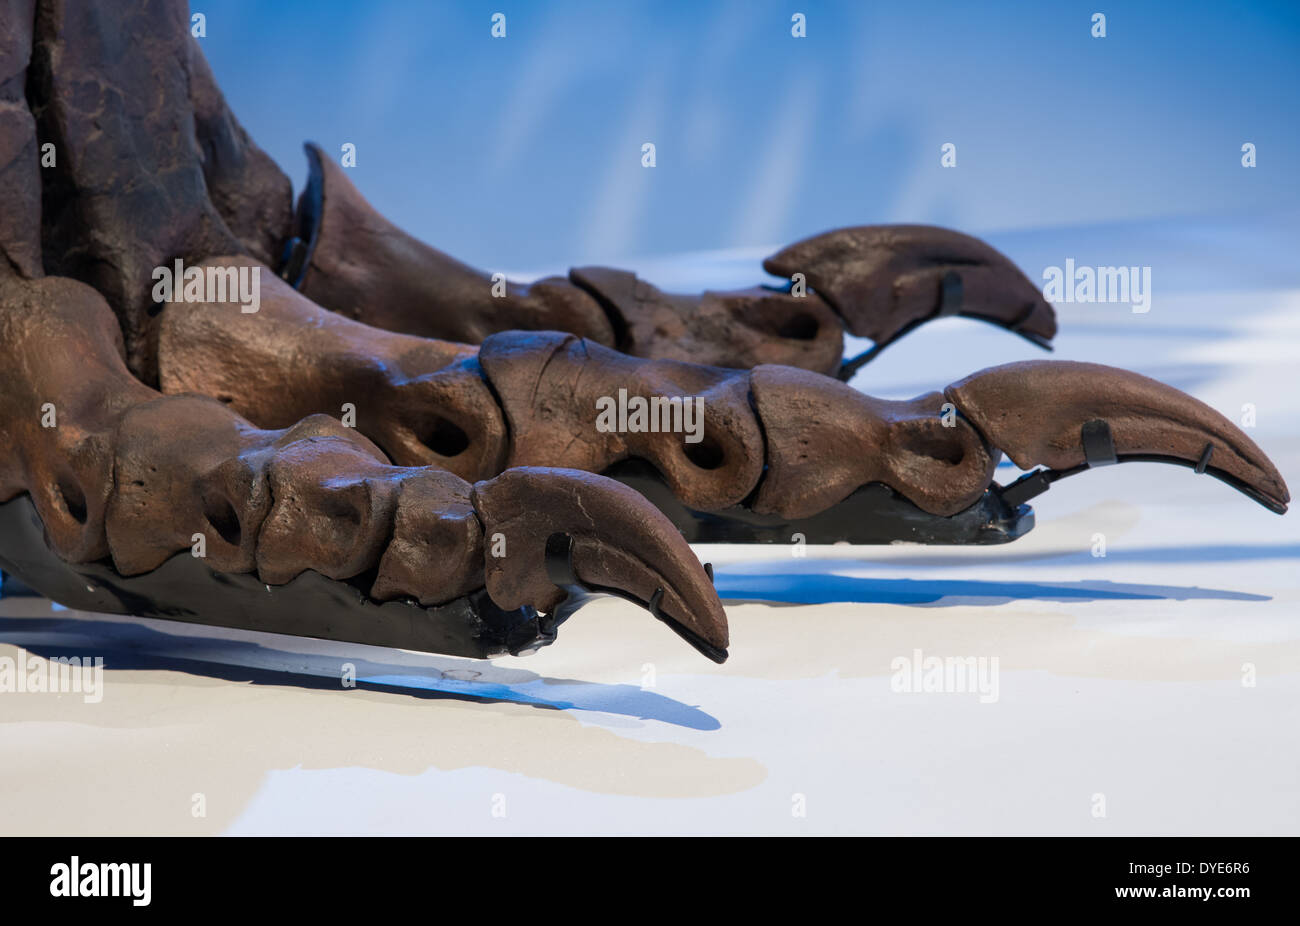 Hind fósil dedos del Tyrannosaurus rex. Cretácea. Foto de stock